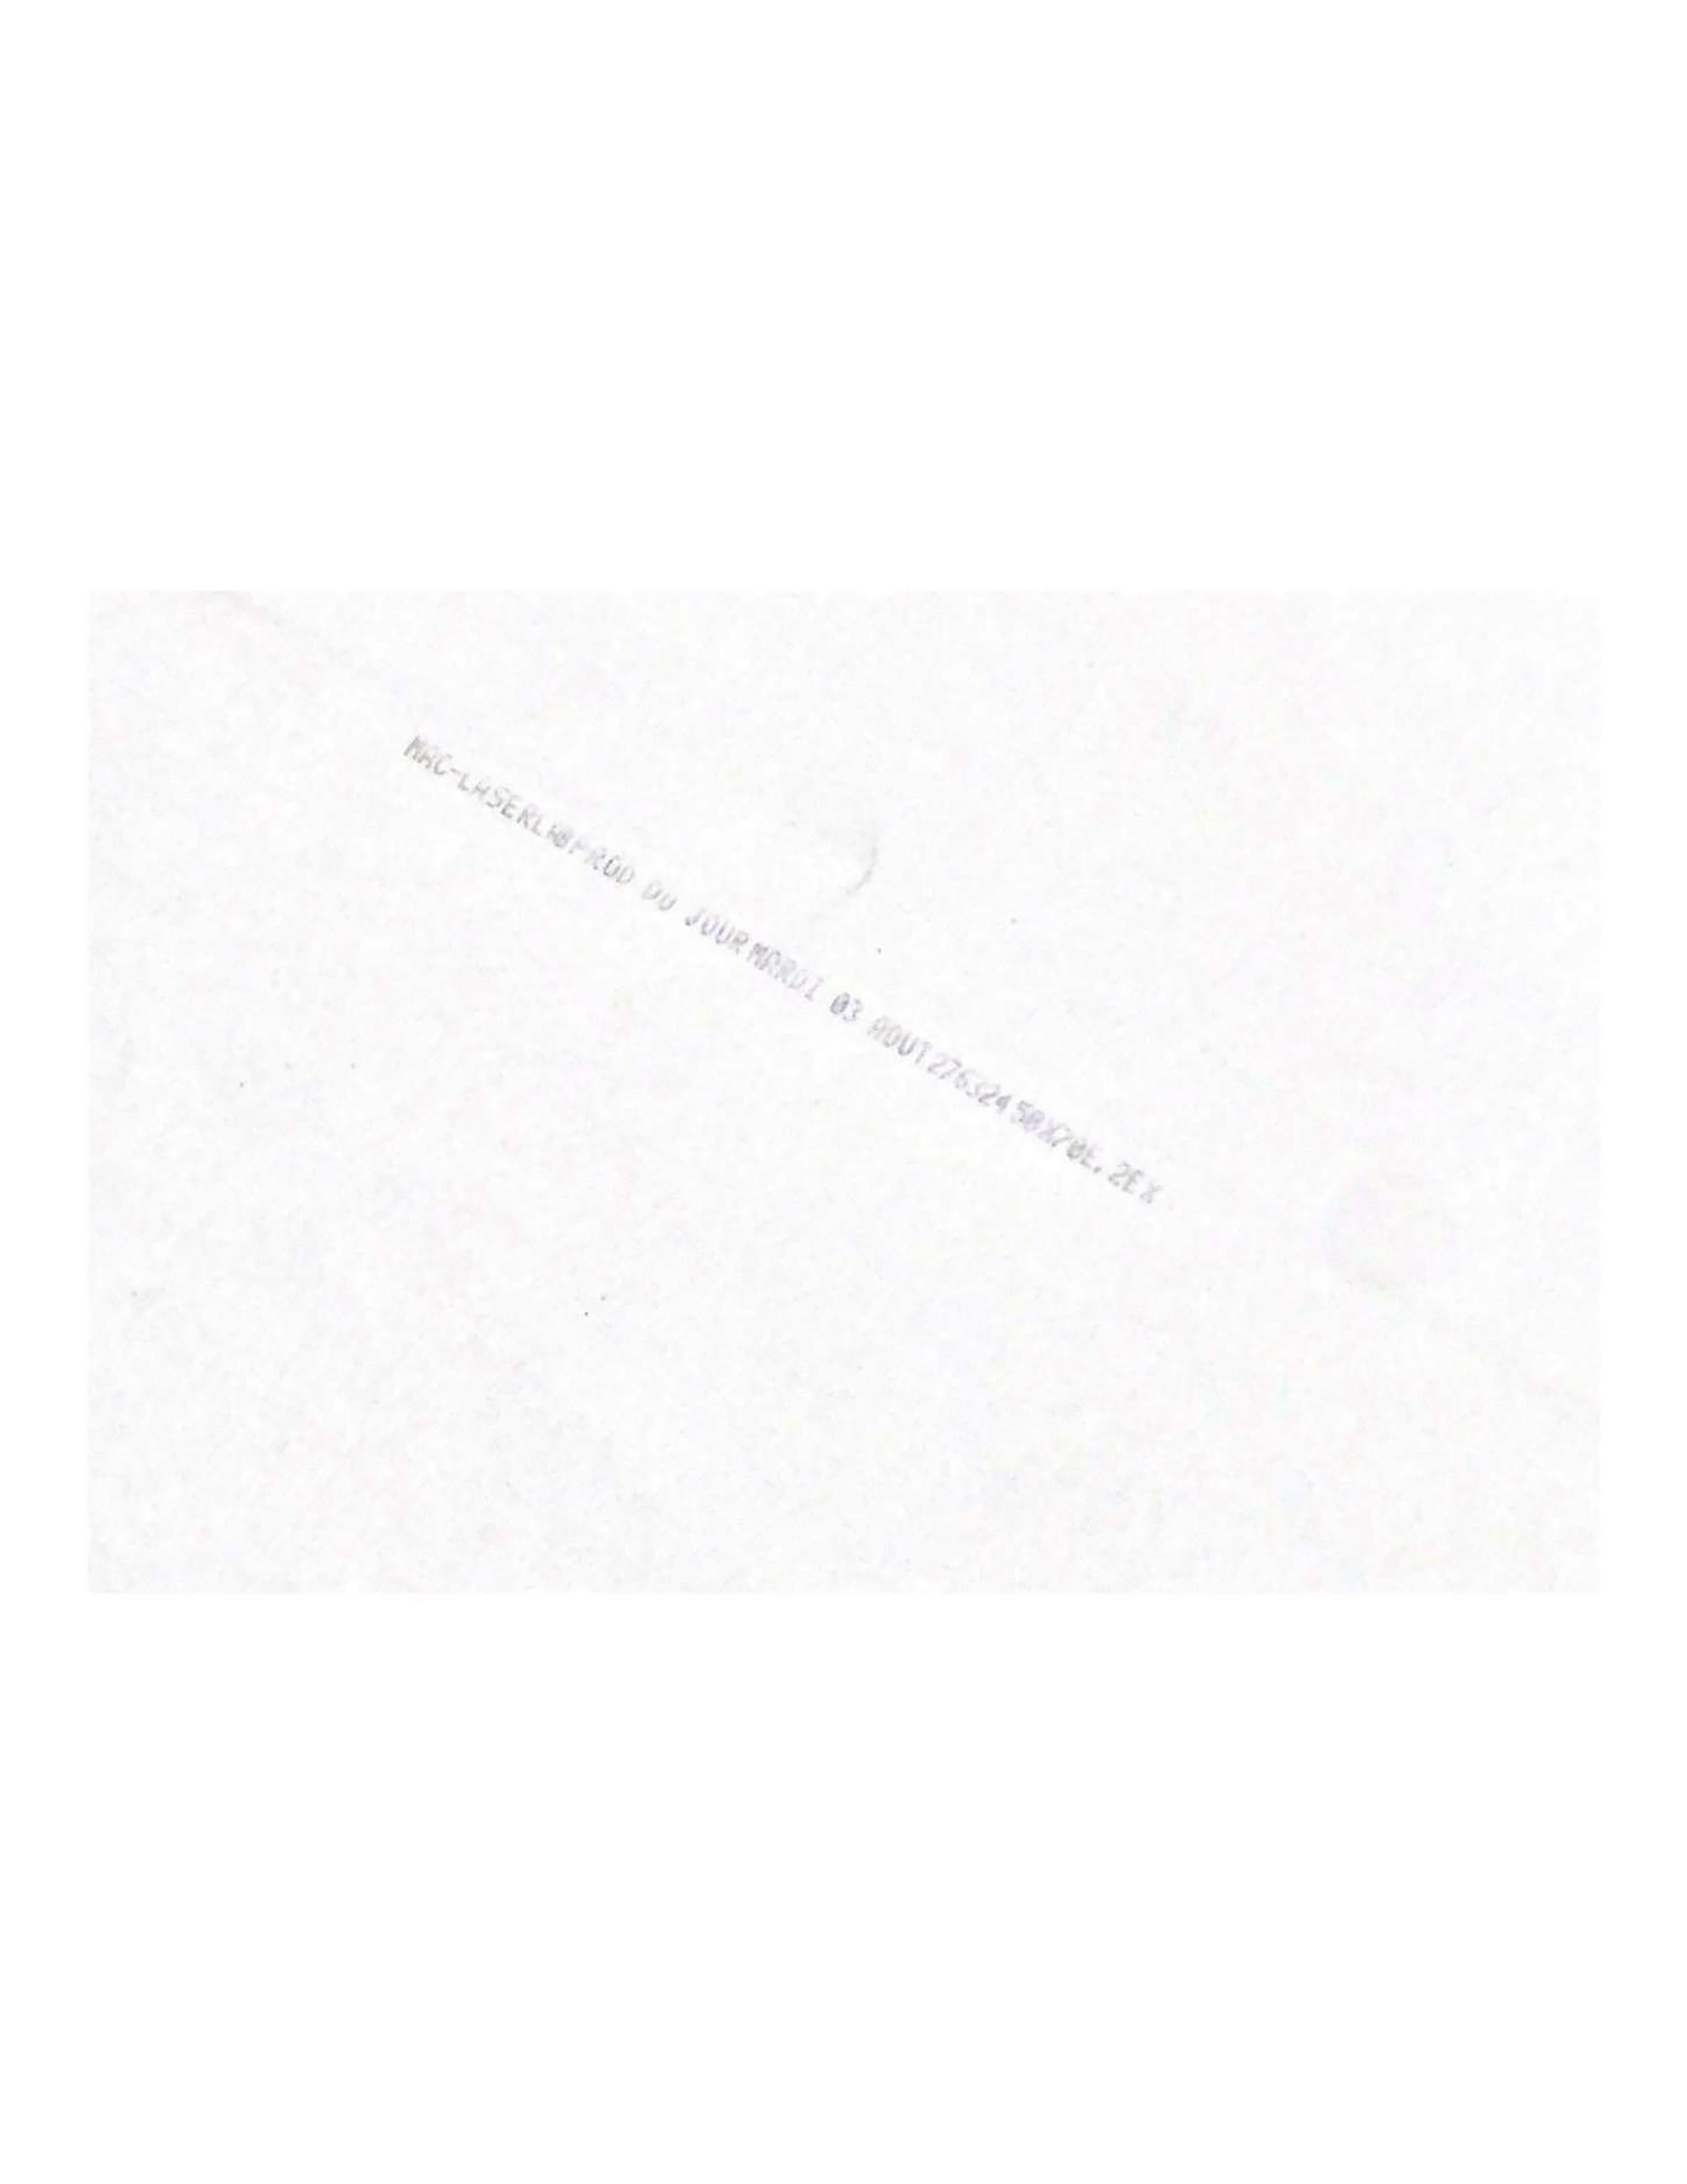 Fabrice Vallon. La Tour Eiffel. 
photographie de 2007
papier photographique 
numérotée et signée 2/100
petit accident en bas à gauche
dimensions : 70x50 cm
